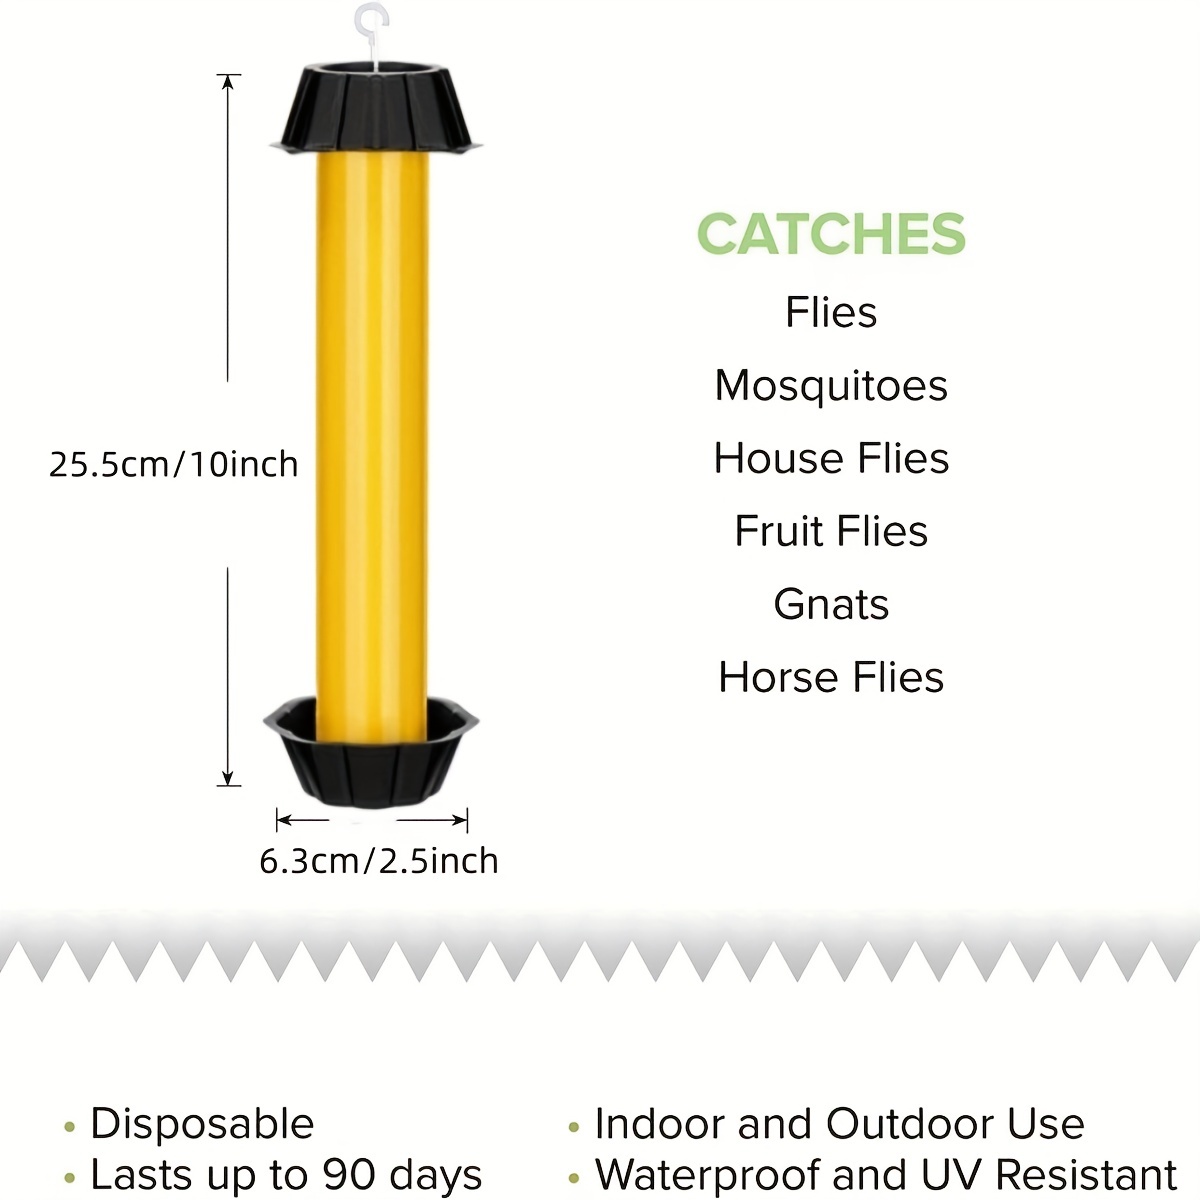 32 PCS Sticky Fly Paper,Fruit Fly Traps for Kitchen, Fruit Fly Strips  Catcher 